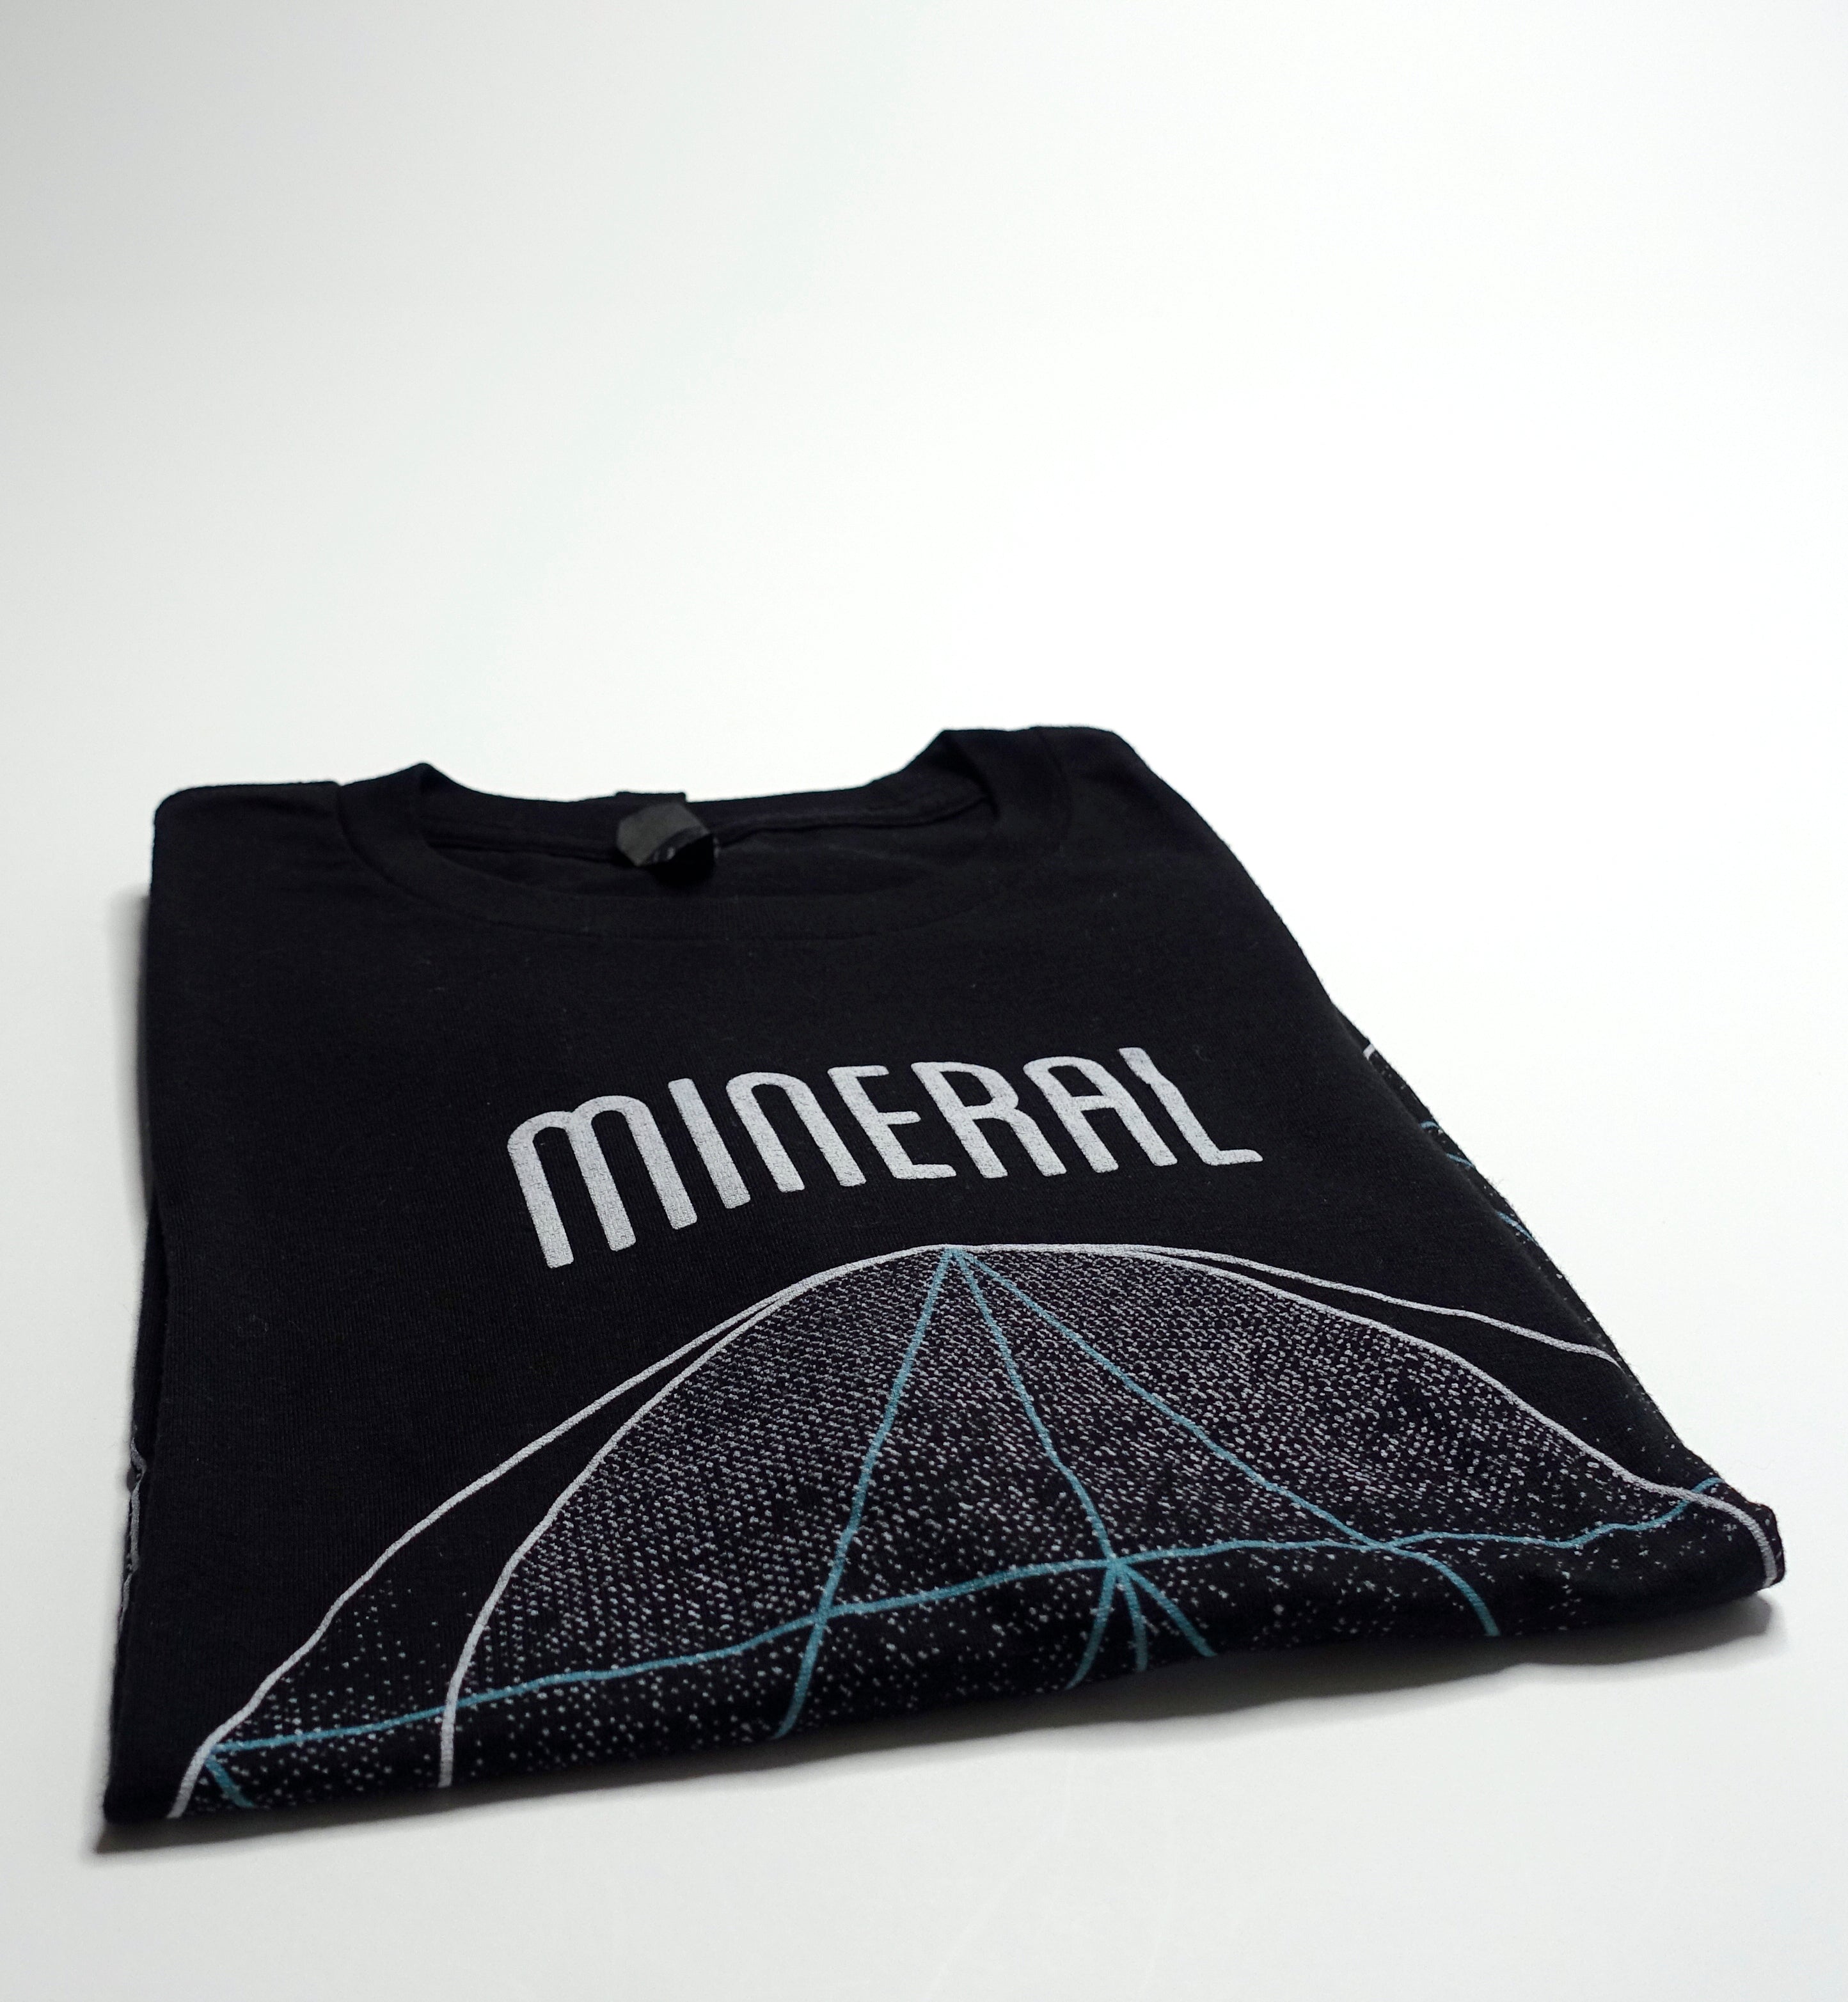 Mineral - Eye Tear Drop 2014 Tour Shirt Size Large